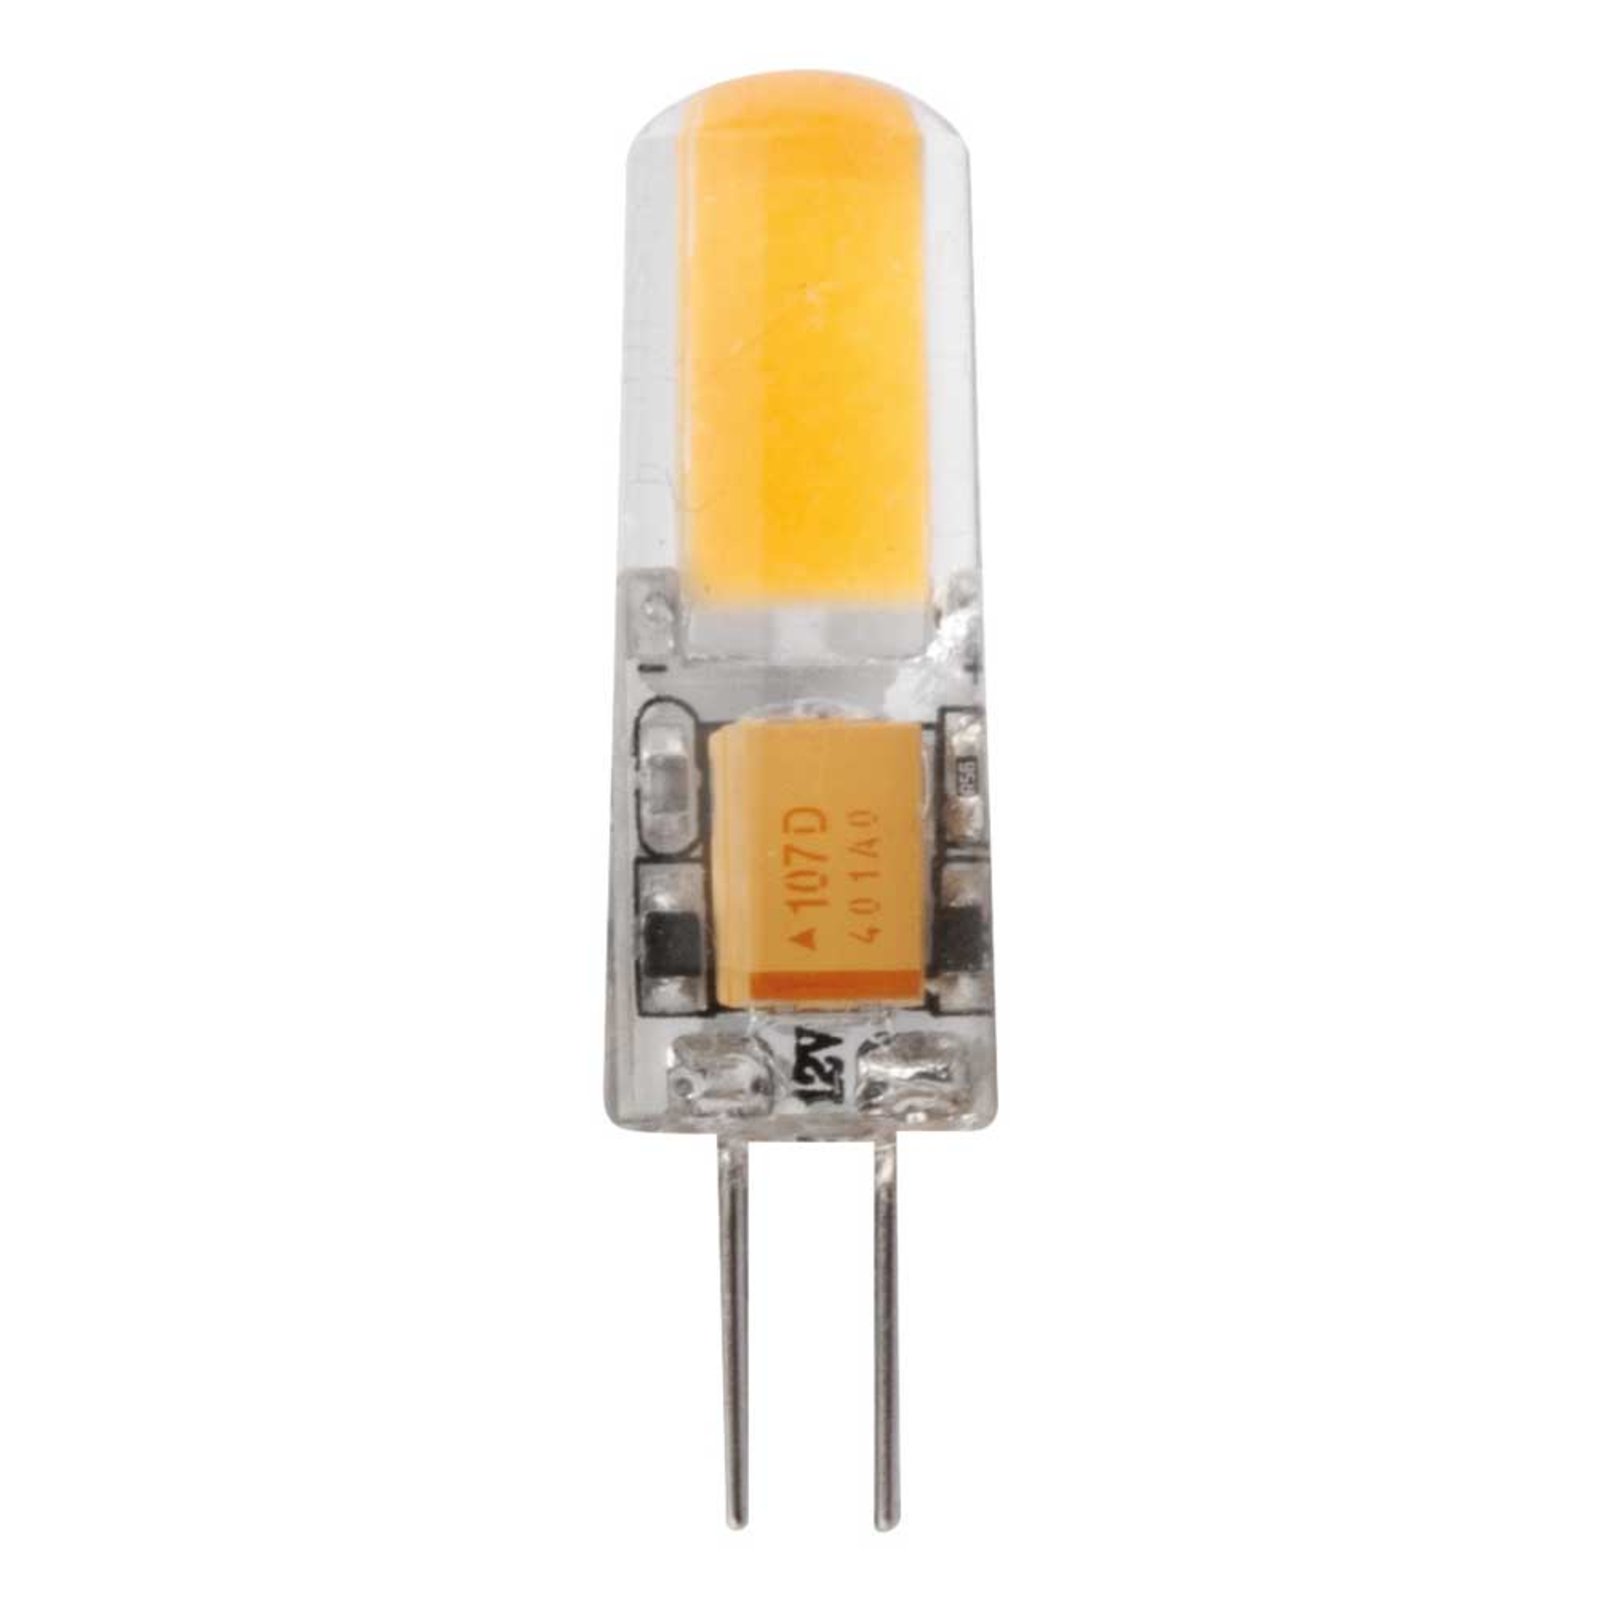 Bi-pin LED bulb G4 1.8W warm white